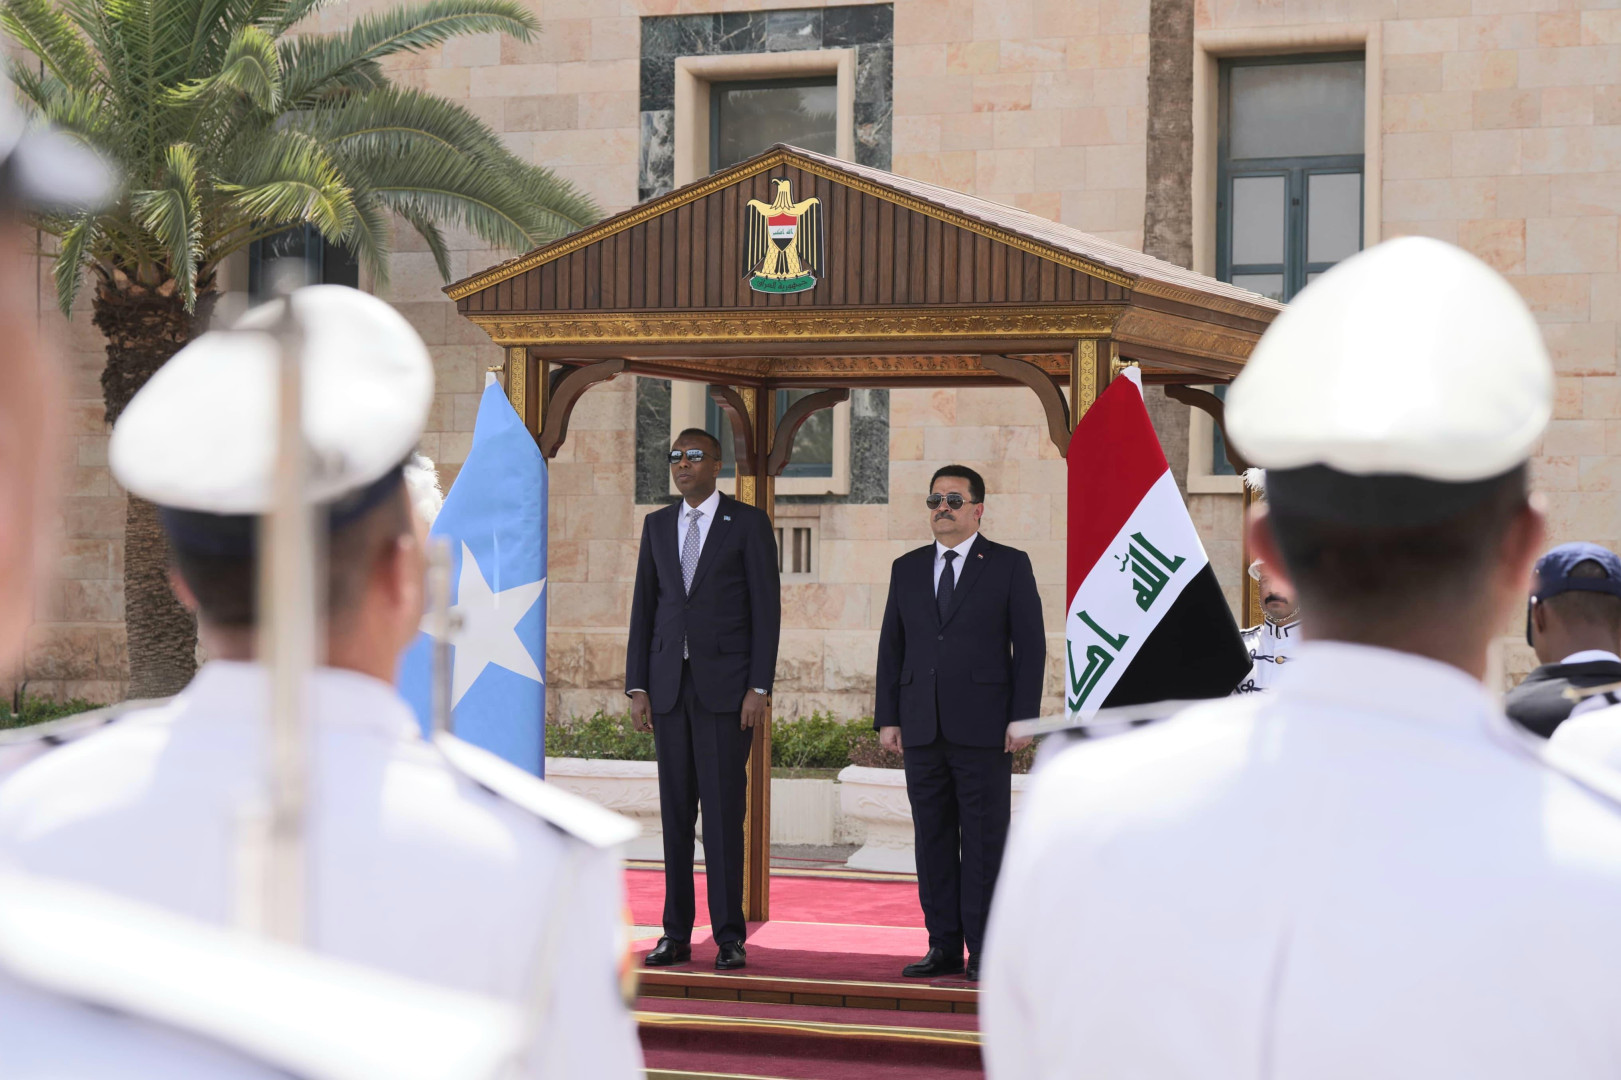 رئيس وزراء الصومال يزور العراق والسوداني يستقبله رسميا